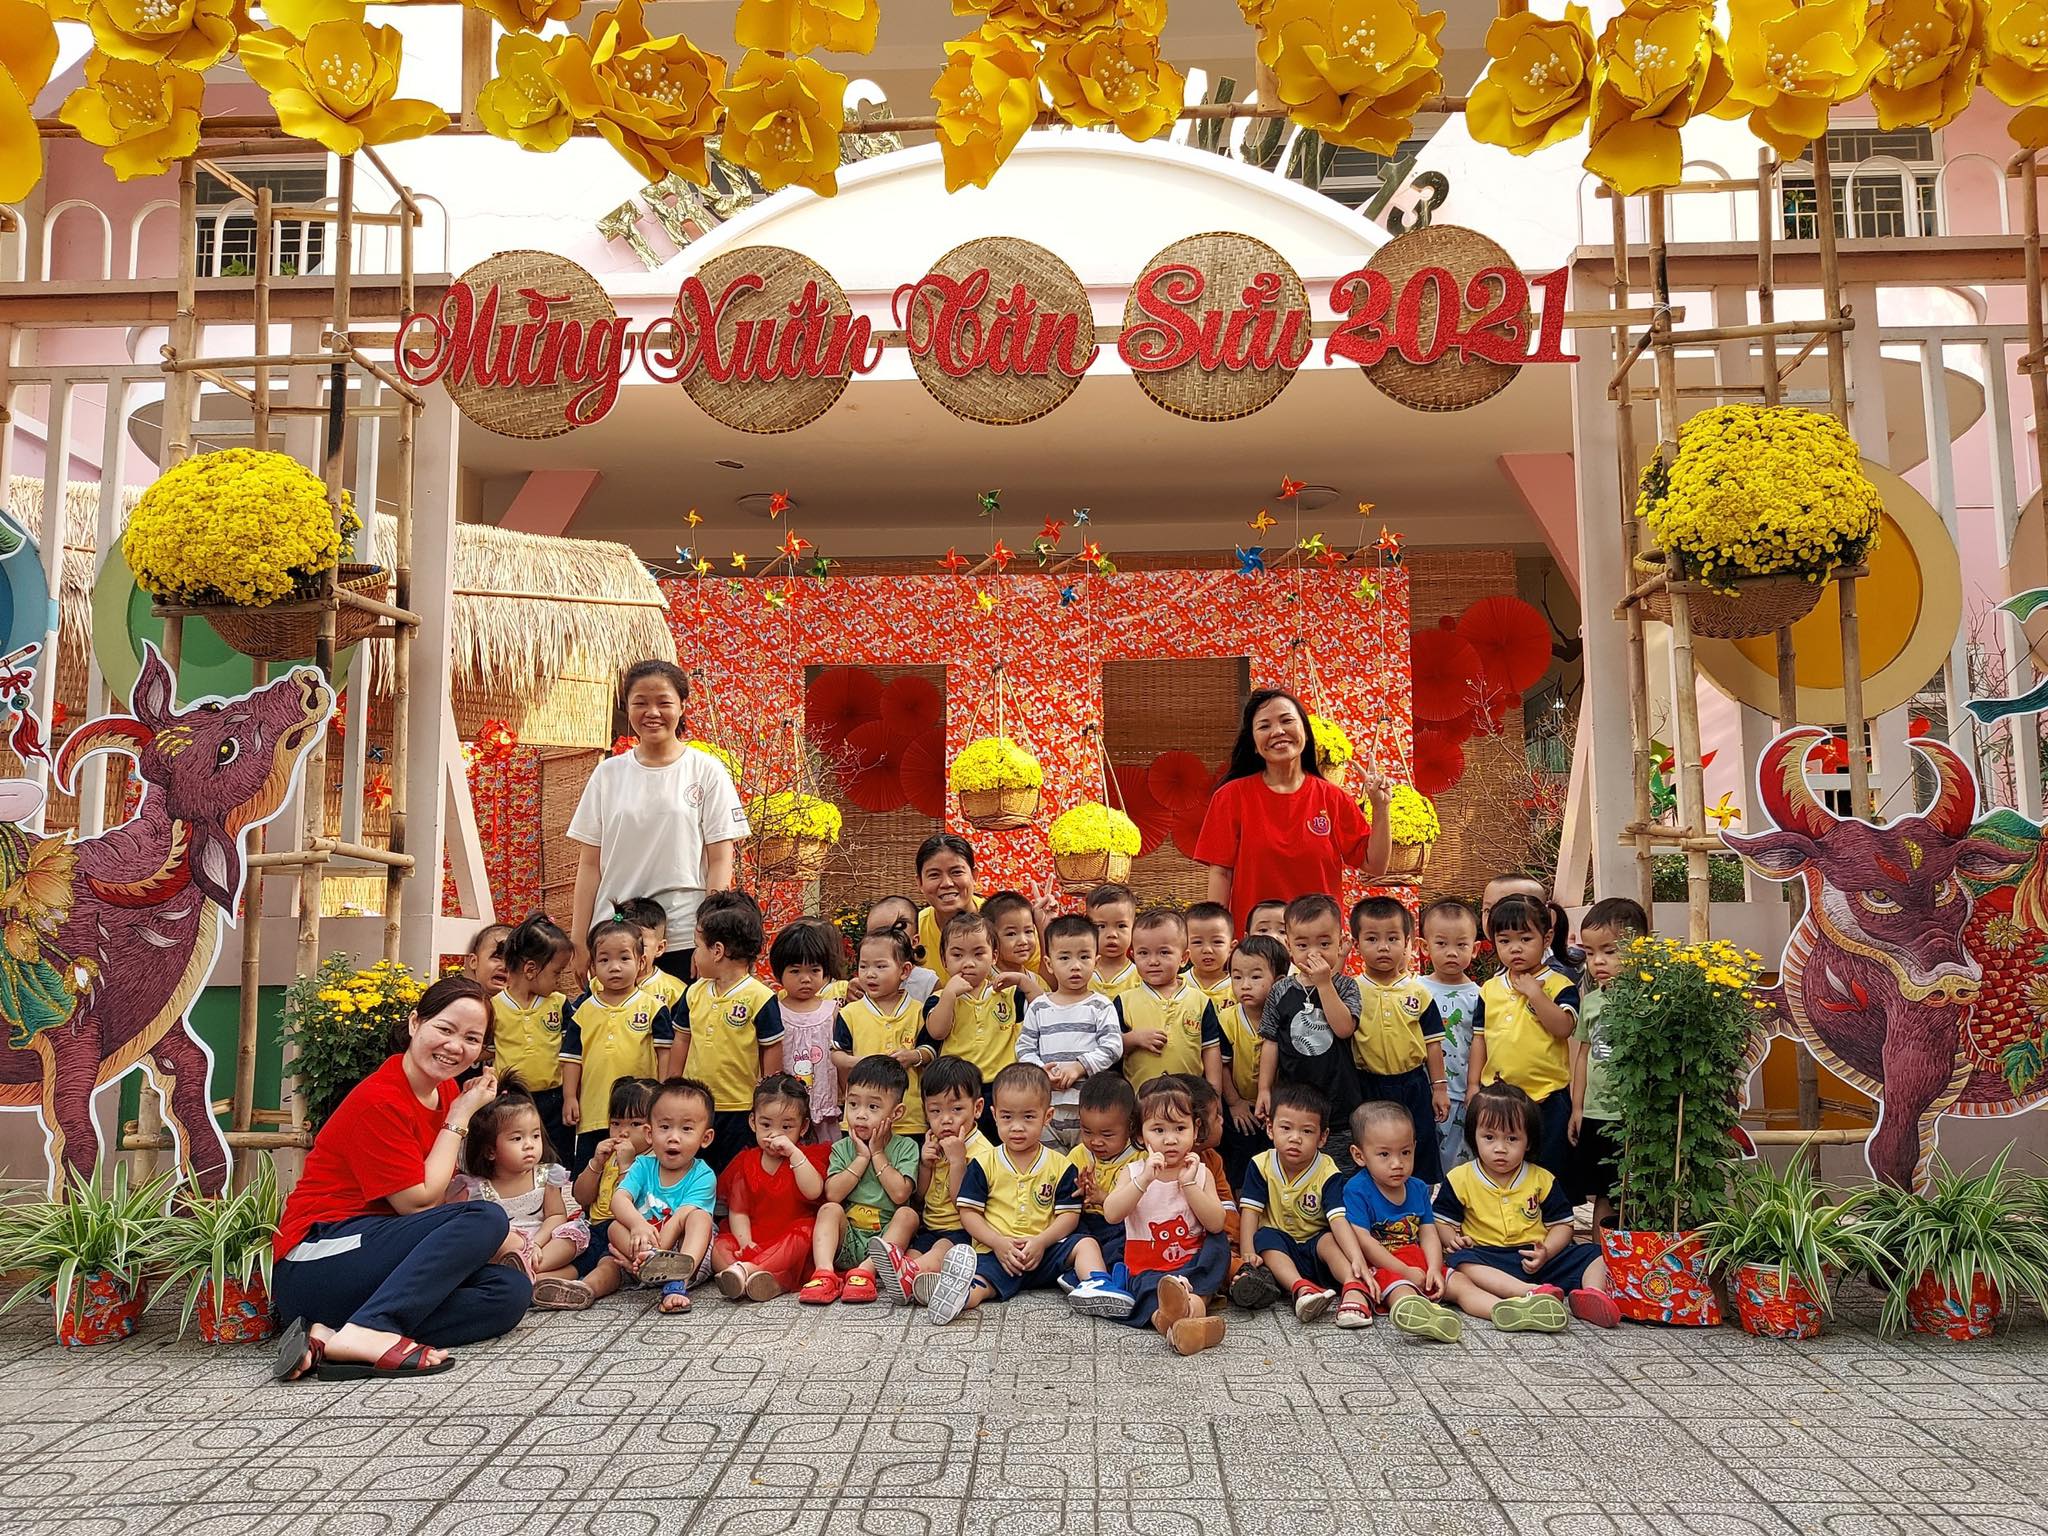 Mẹ Sài Gòn review trường mầm non ai nghe cũng mê: Trường có vườn rau, hồ cá, bé được học nhiều kỹ năng nhưng học phí thì dưới 2 triệu đồng - Ảnh 12.